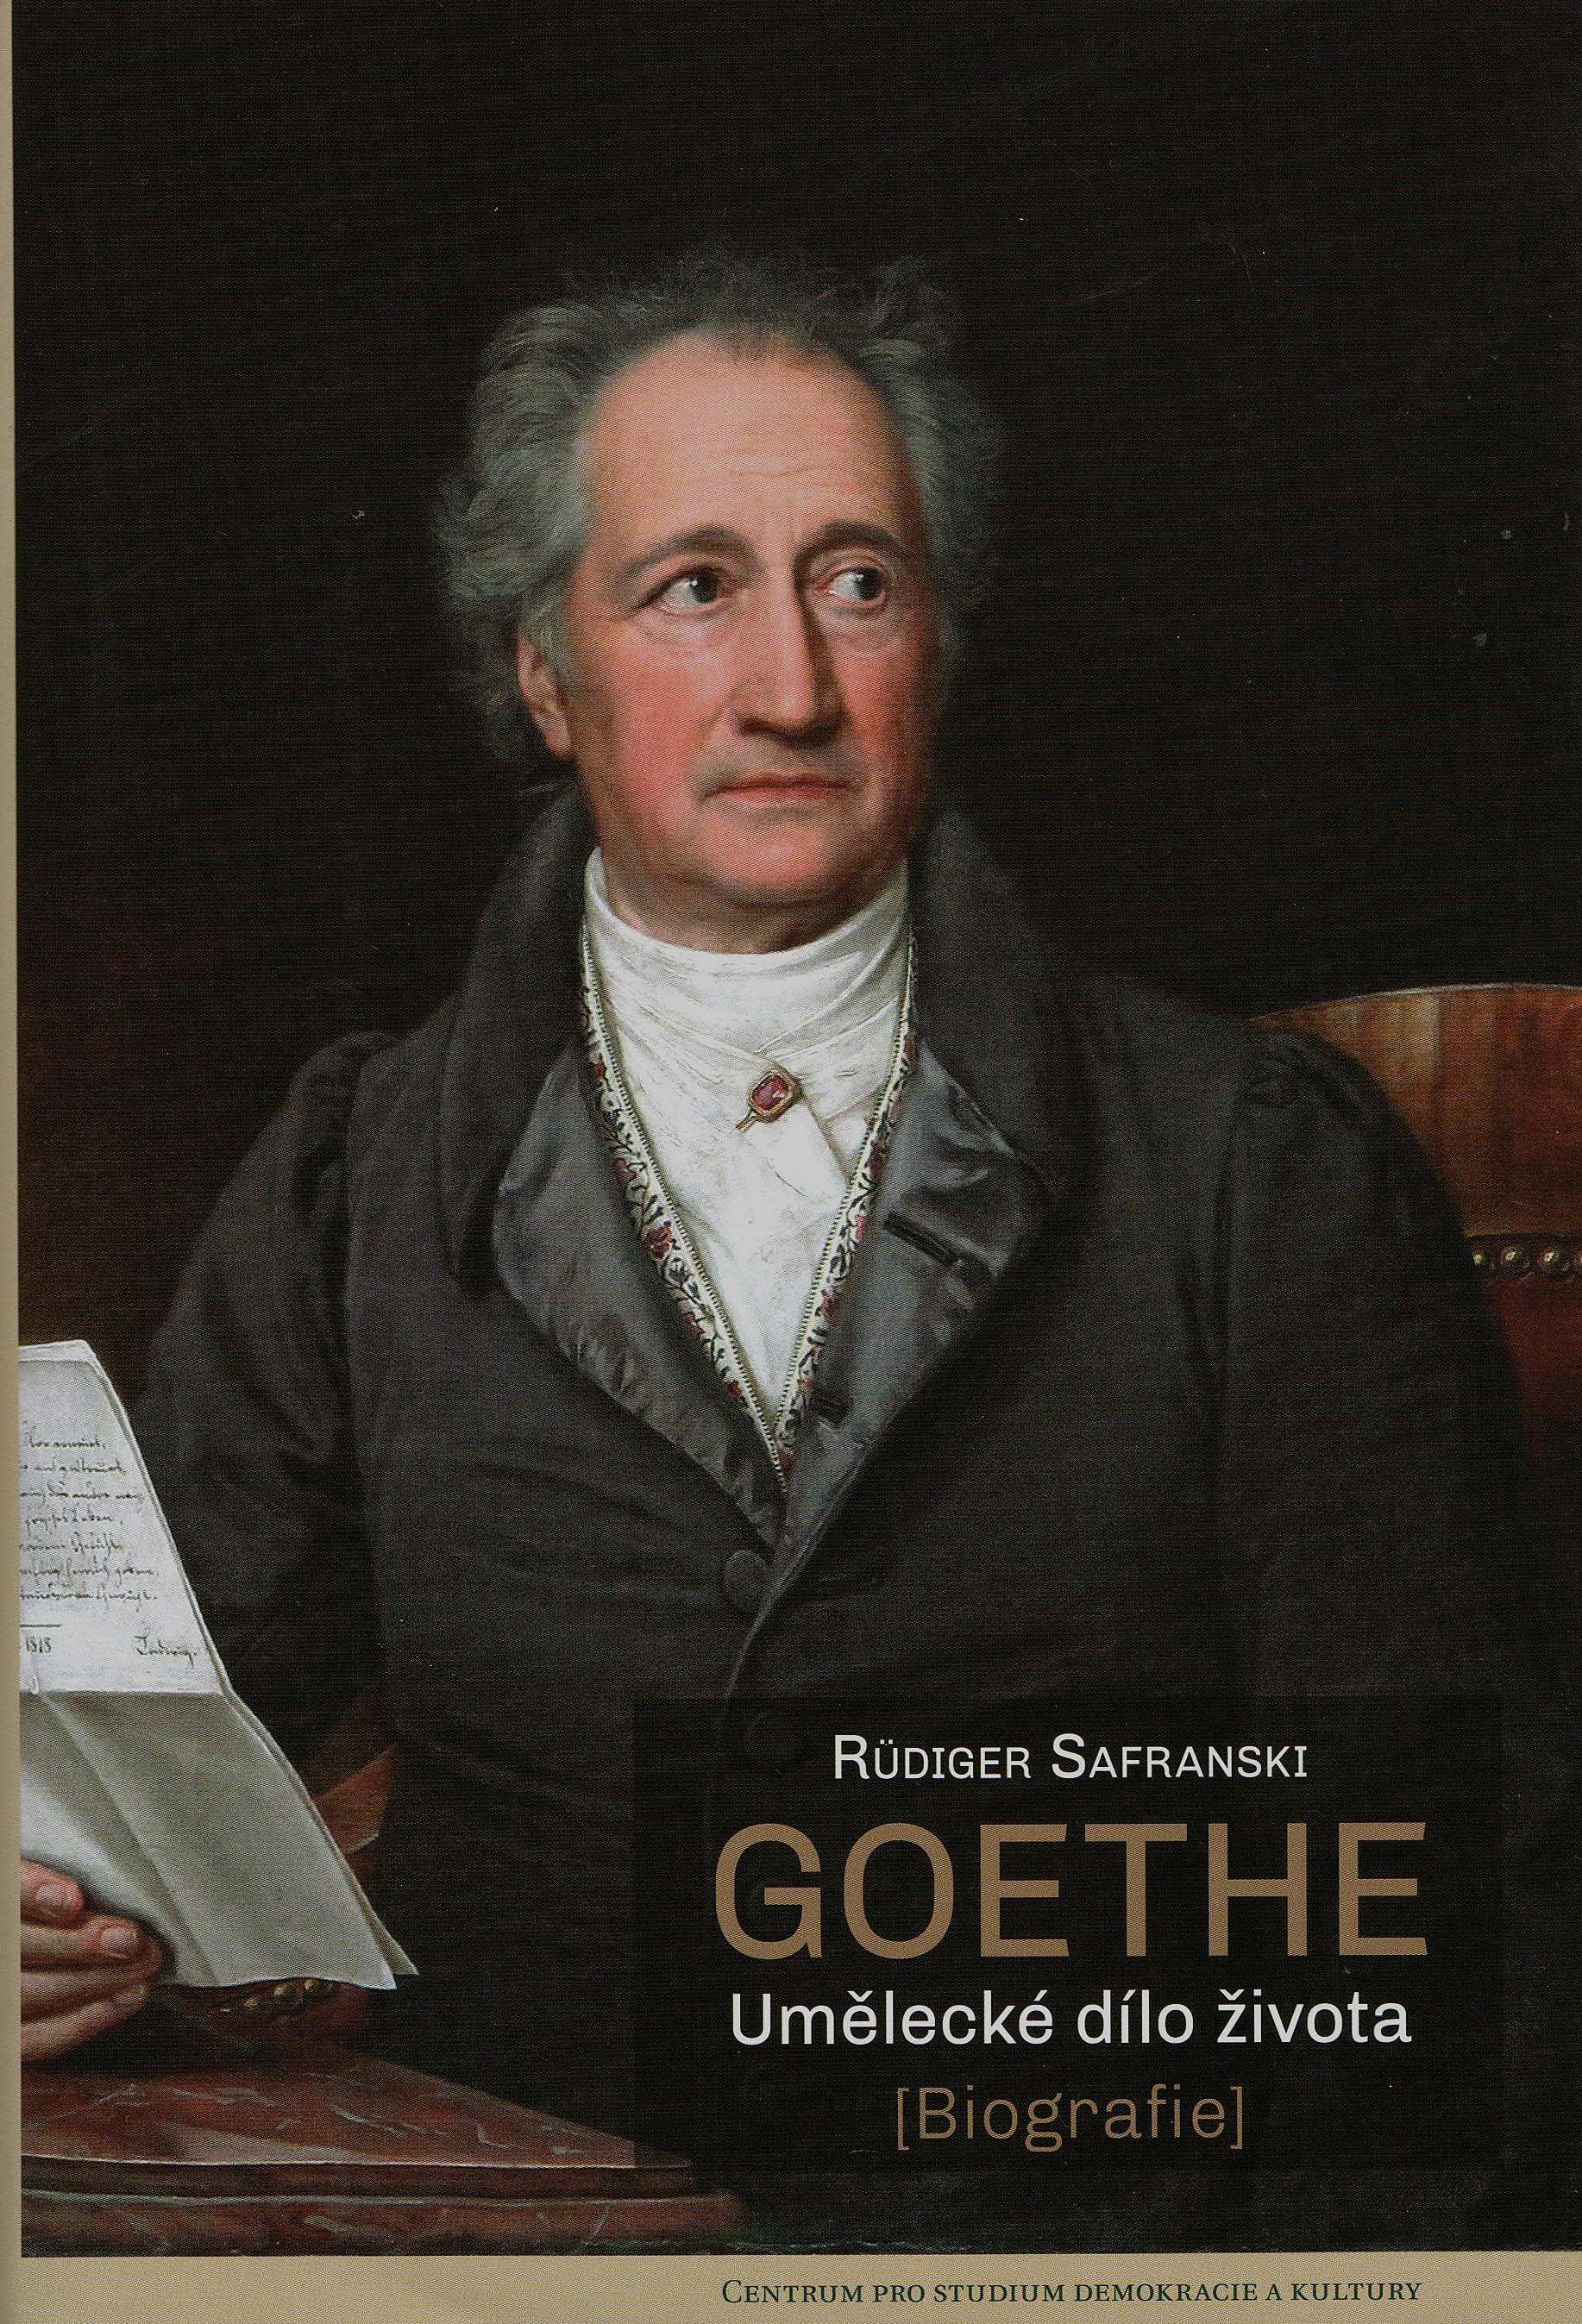 Goethe zcela klasický.